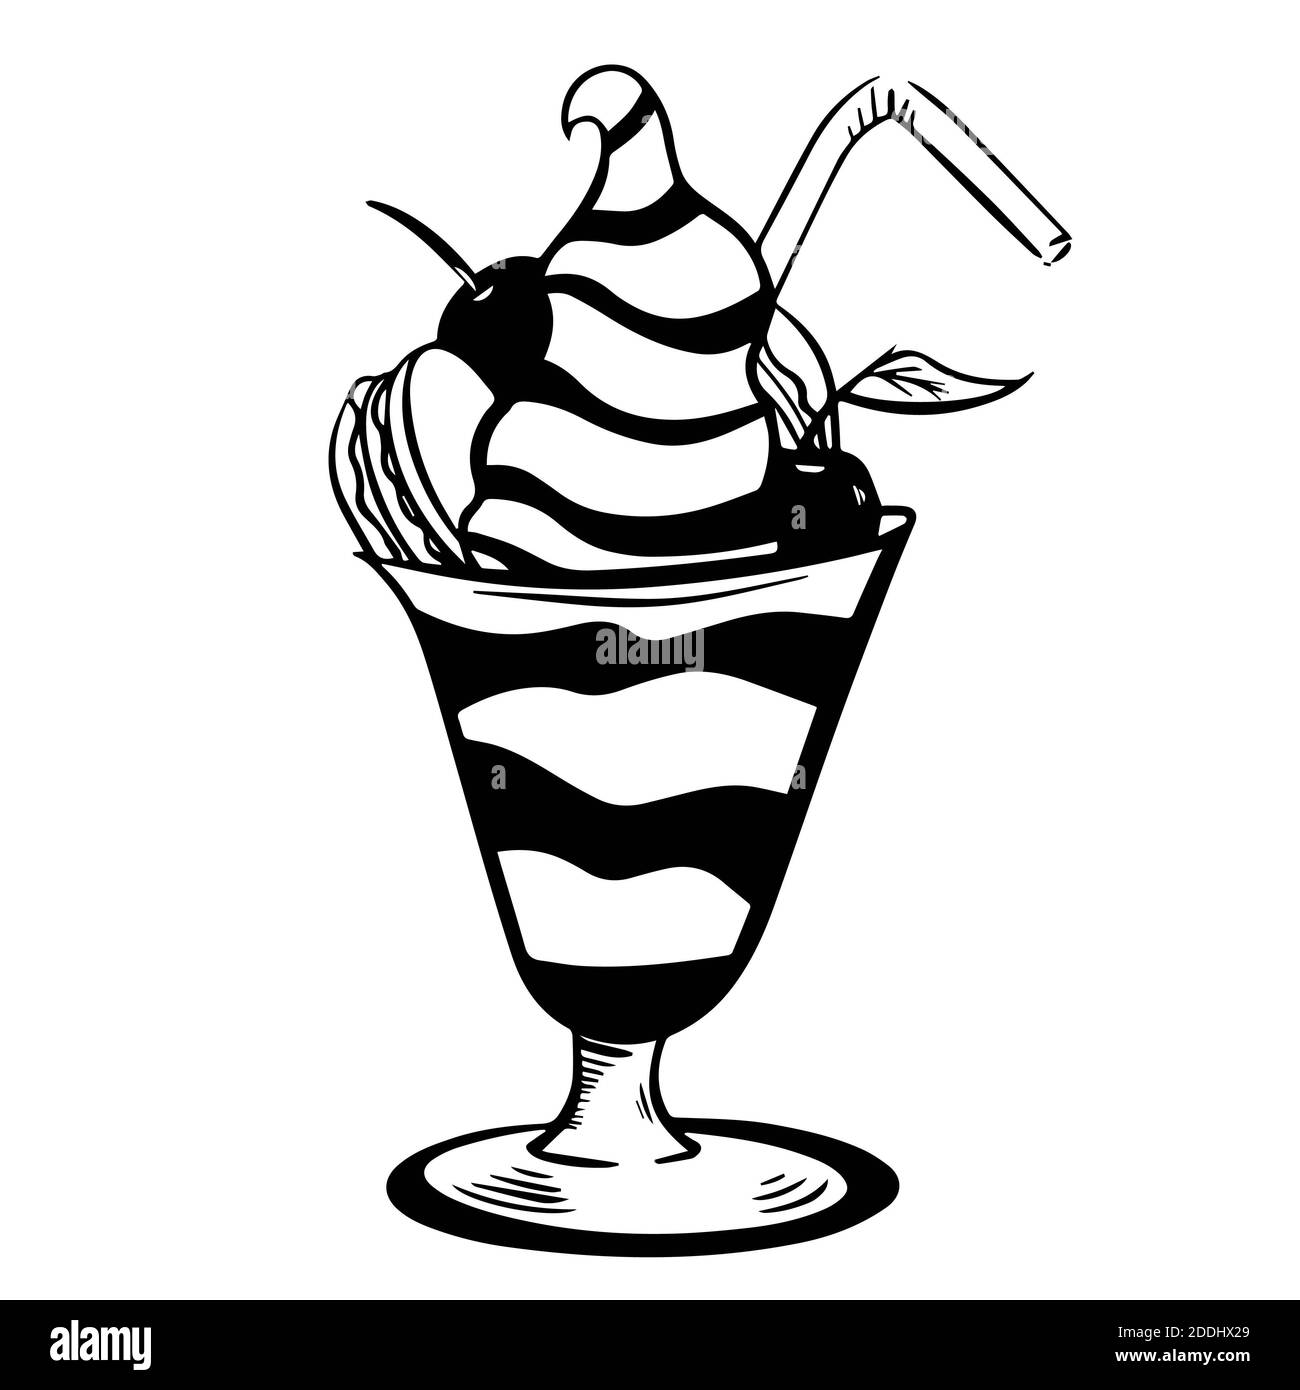 Illustrieren von Eis creame in Glas mit Kirsche, Makronen isoliert auf weißem Hintergrund. Handgezeichnete schwarz-weiße Vektorgrafik. Kabine verwendet werden in Stockfoto